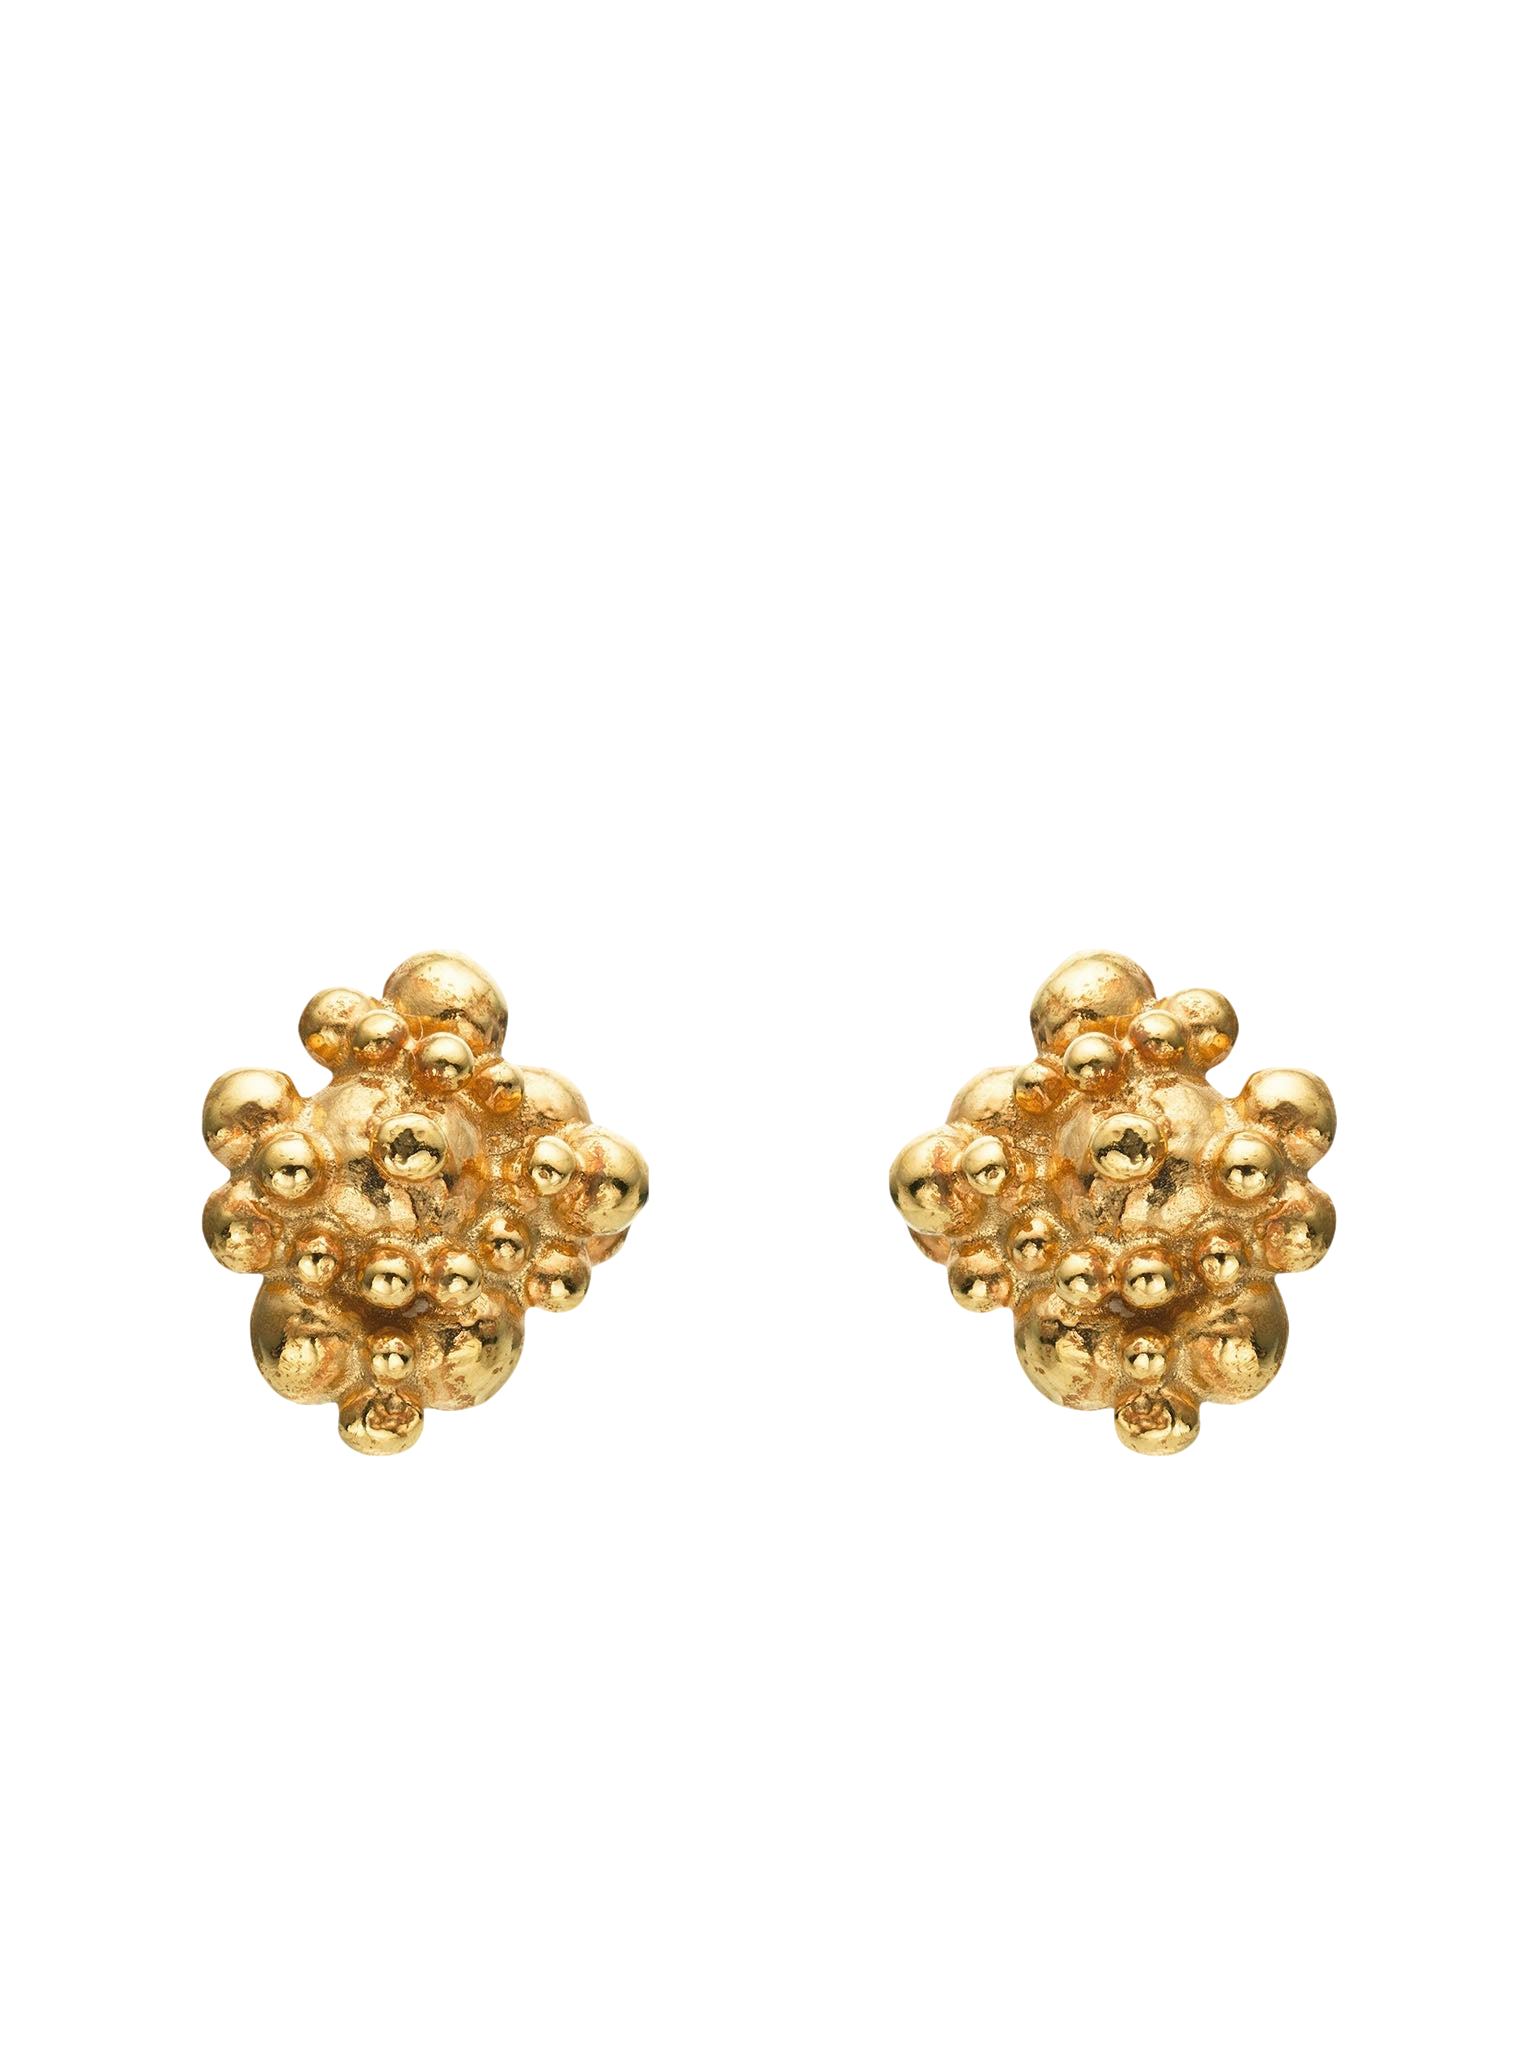 Céleste Deux Small Earrings 14ct Gold von Eva Remenyi